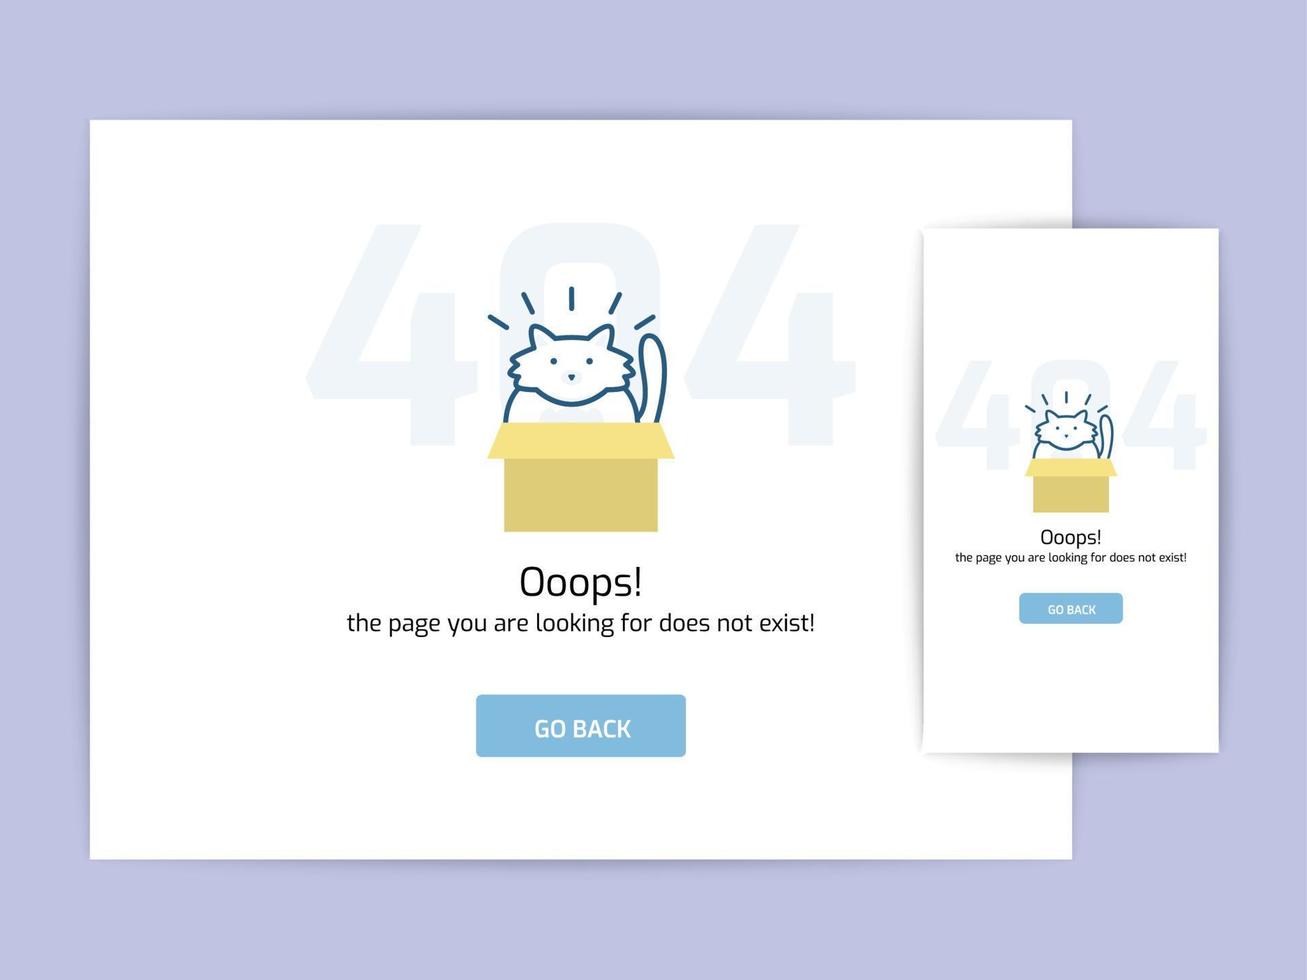 página não encontrada 404 modelo de conceito de design. vetor de linha plana de página de erro. link para uma página inexistente. astronauta na ilustração da caixa